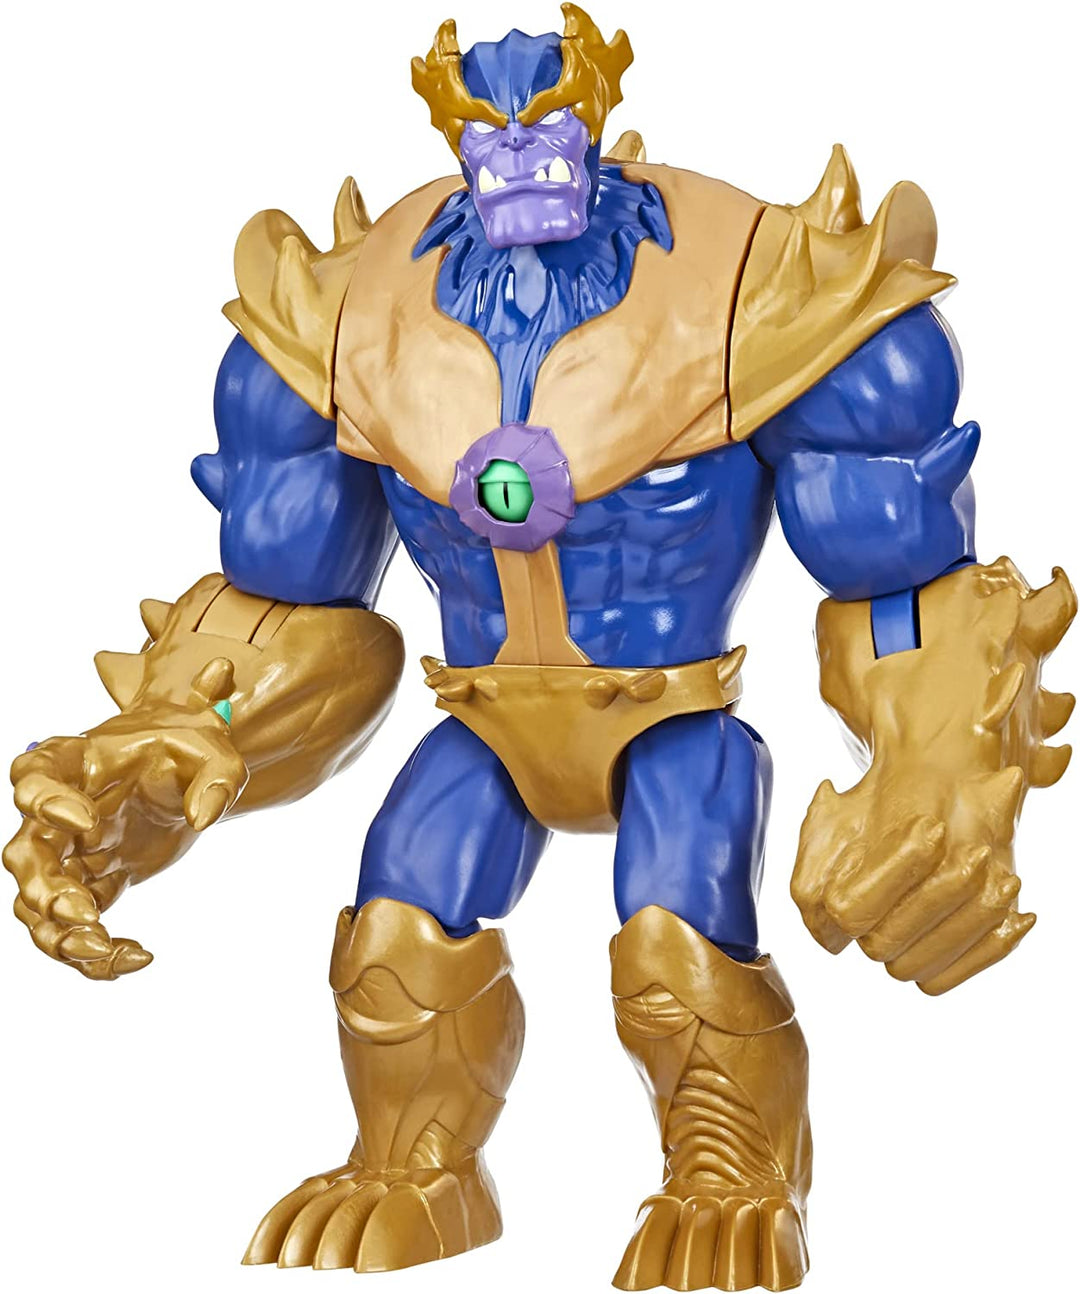 Hasbro Marvel Avengers Mech Strike Monster Hunters Monster Punch Thanos Toy, 22.